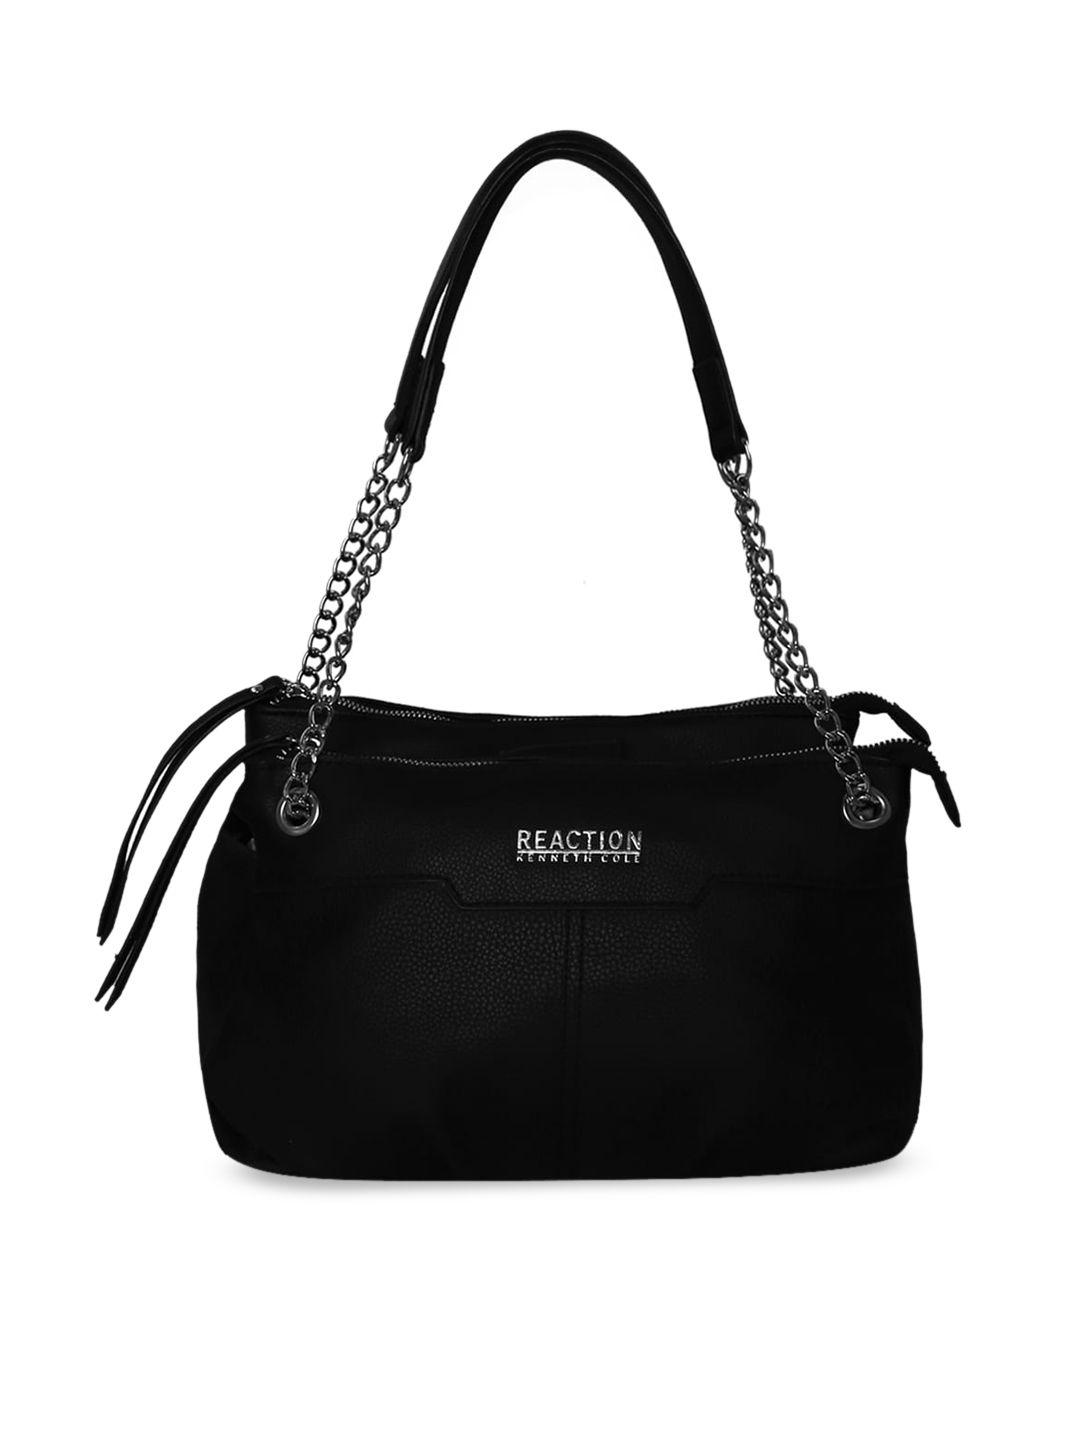 kenneth cole black solid satchel handbag